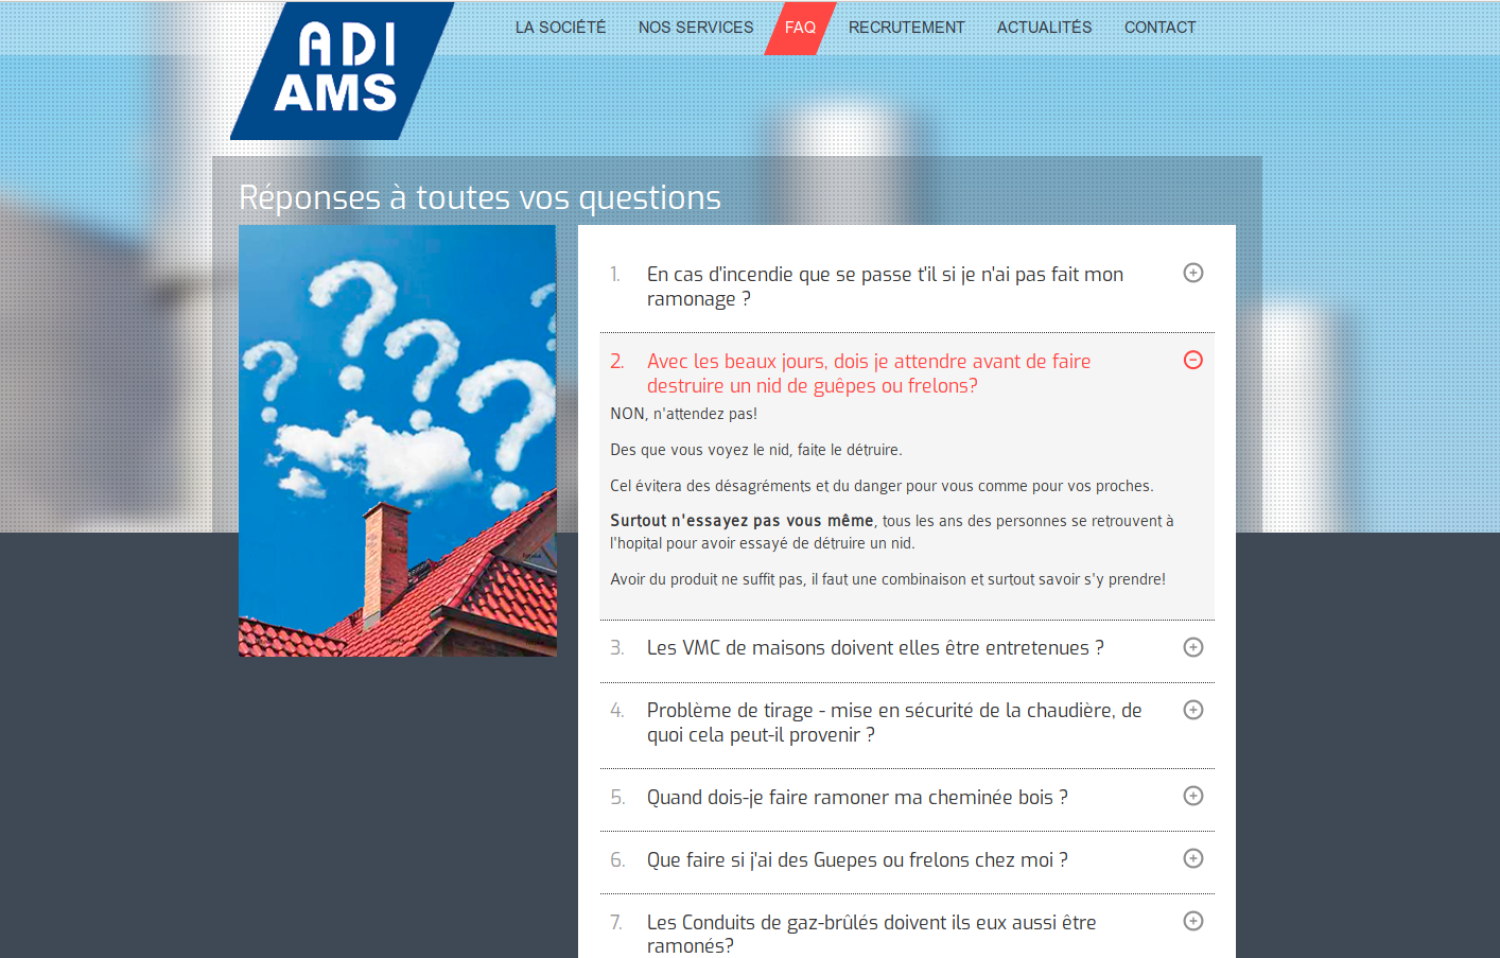 ADI AMS FAQ